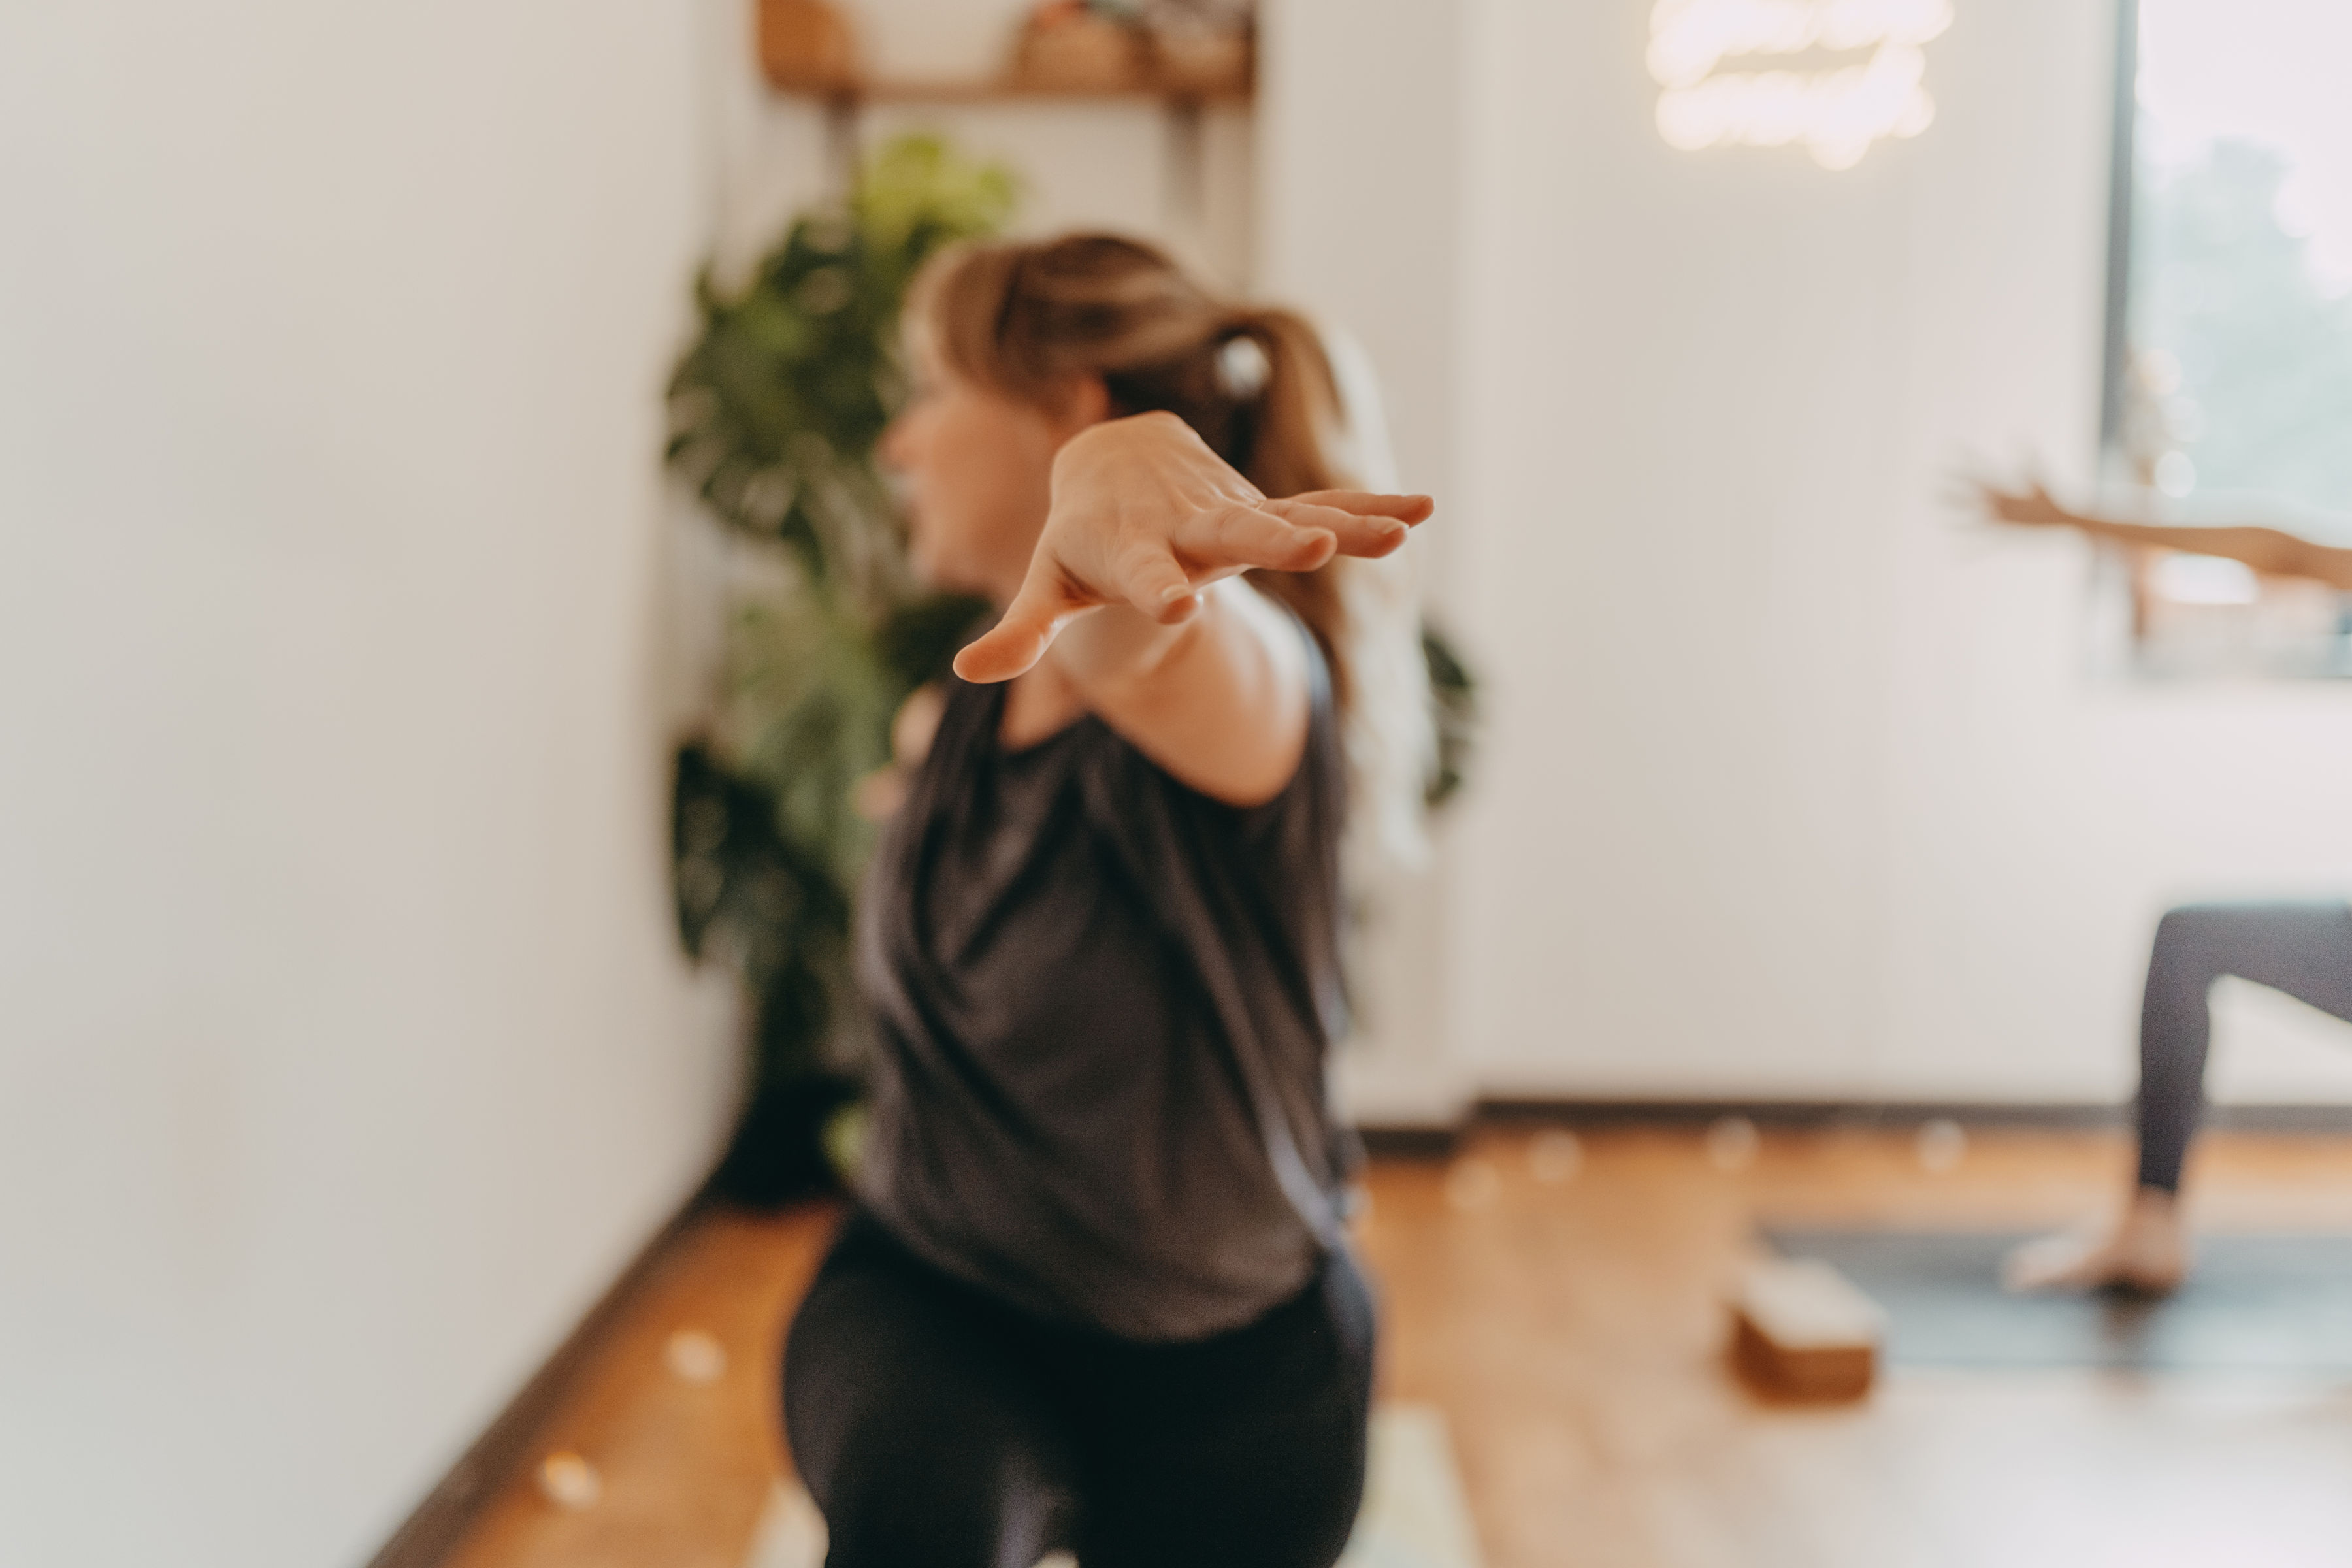 Wellness Warriors: Finding mental wellness through yoga - Good